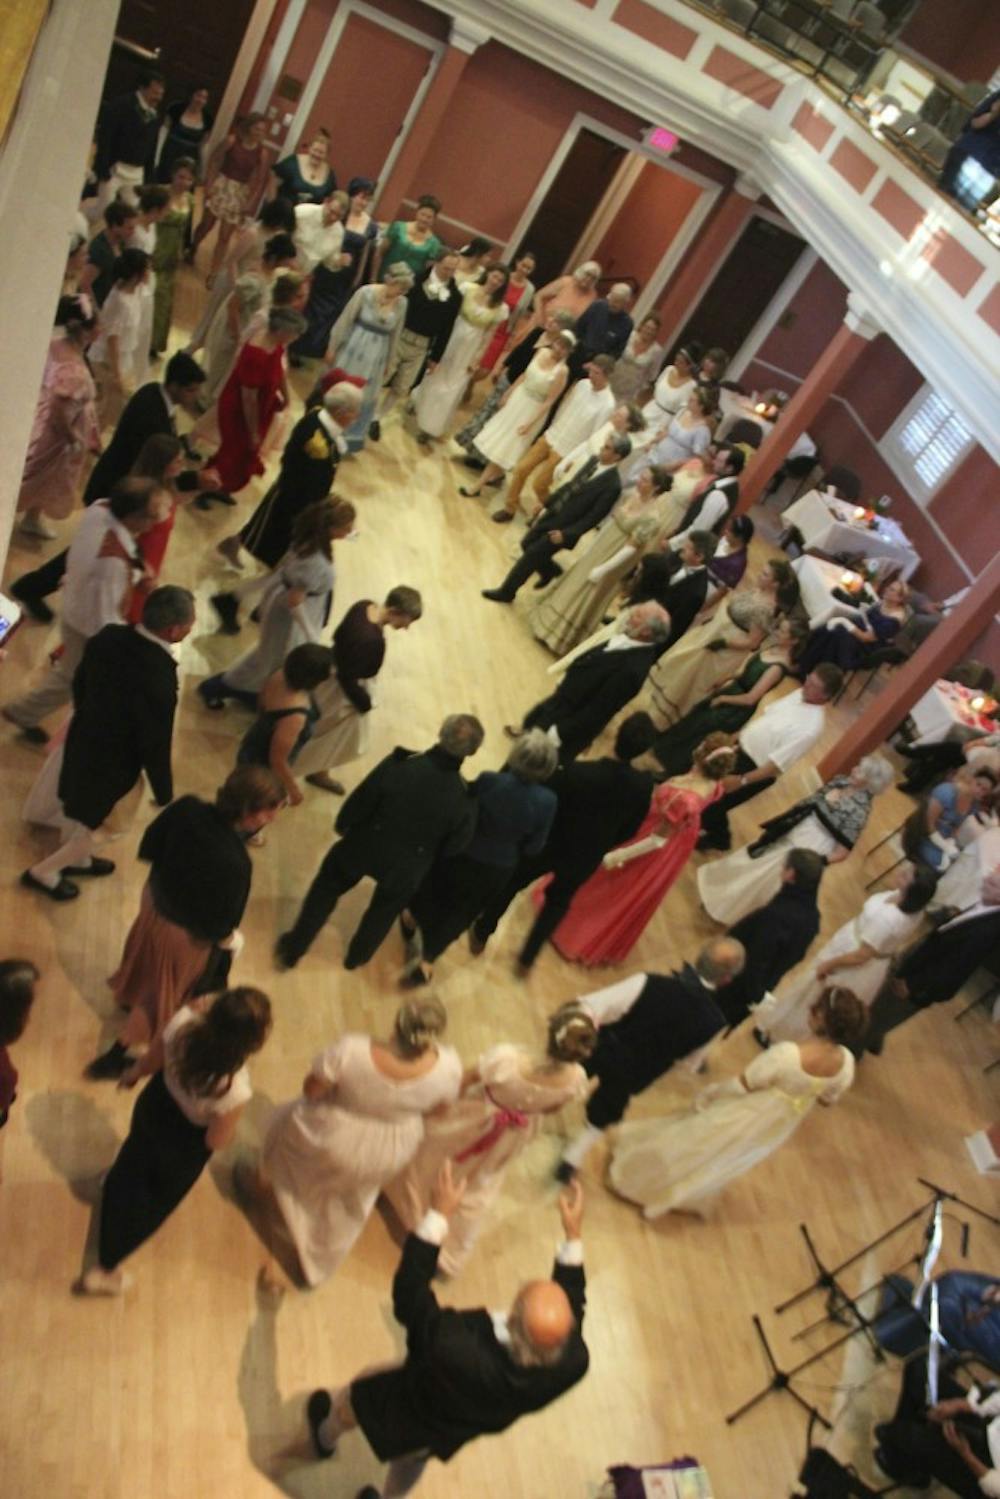 The Dutchess of Richmond Regency Ball as part of the Jane Austen Summer Program